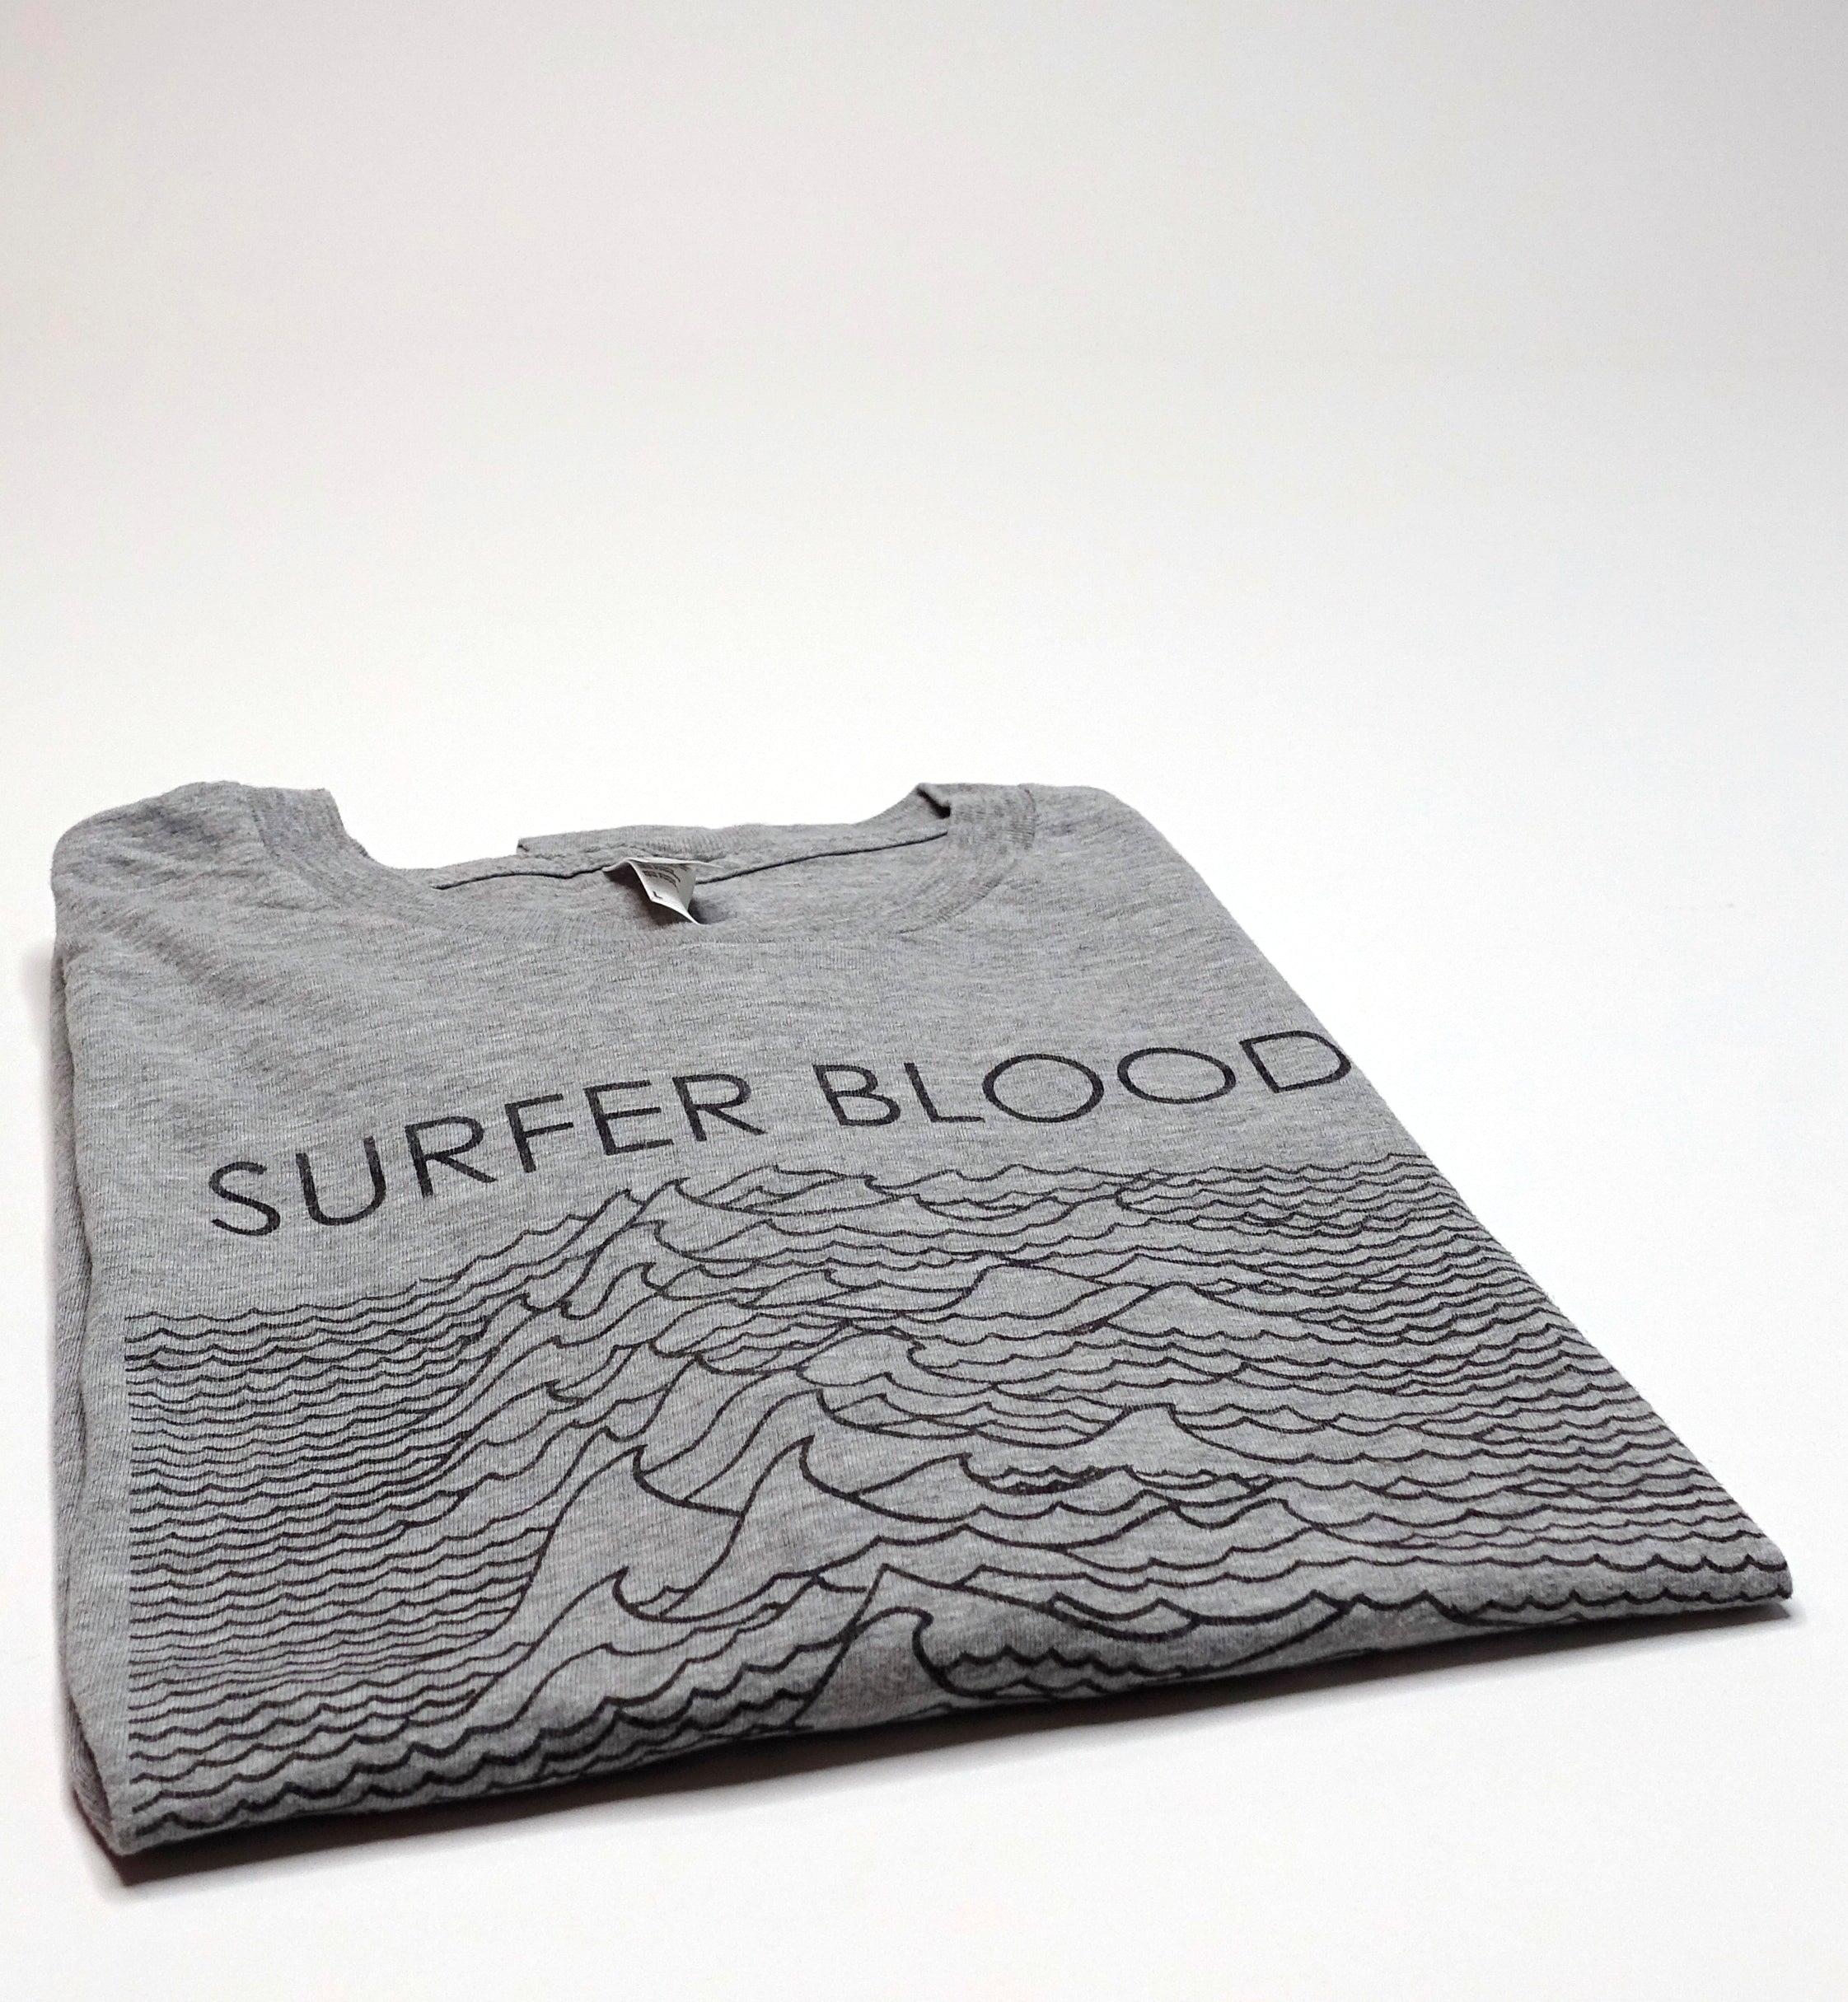 Surfer Blood - Astro Coast 2009 Tour Shirt Size Large